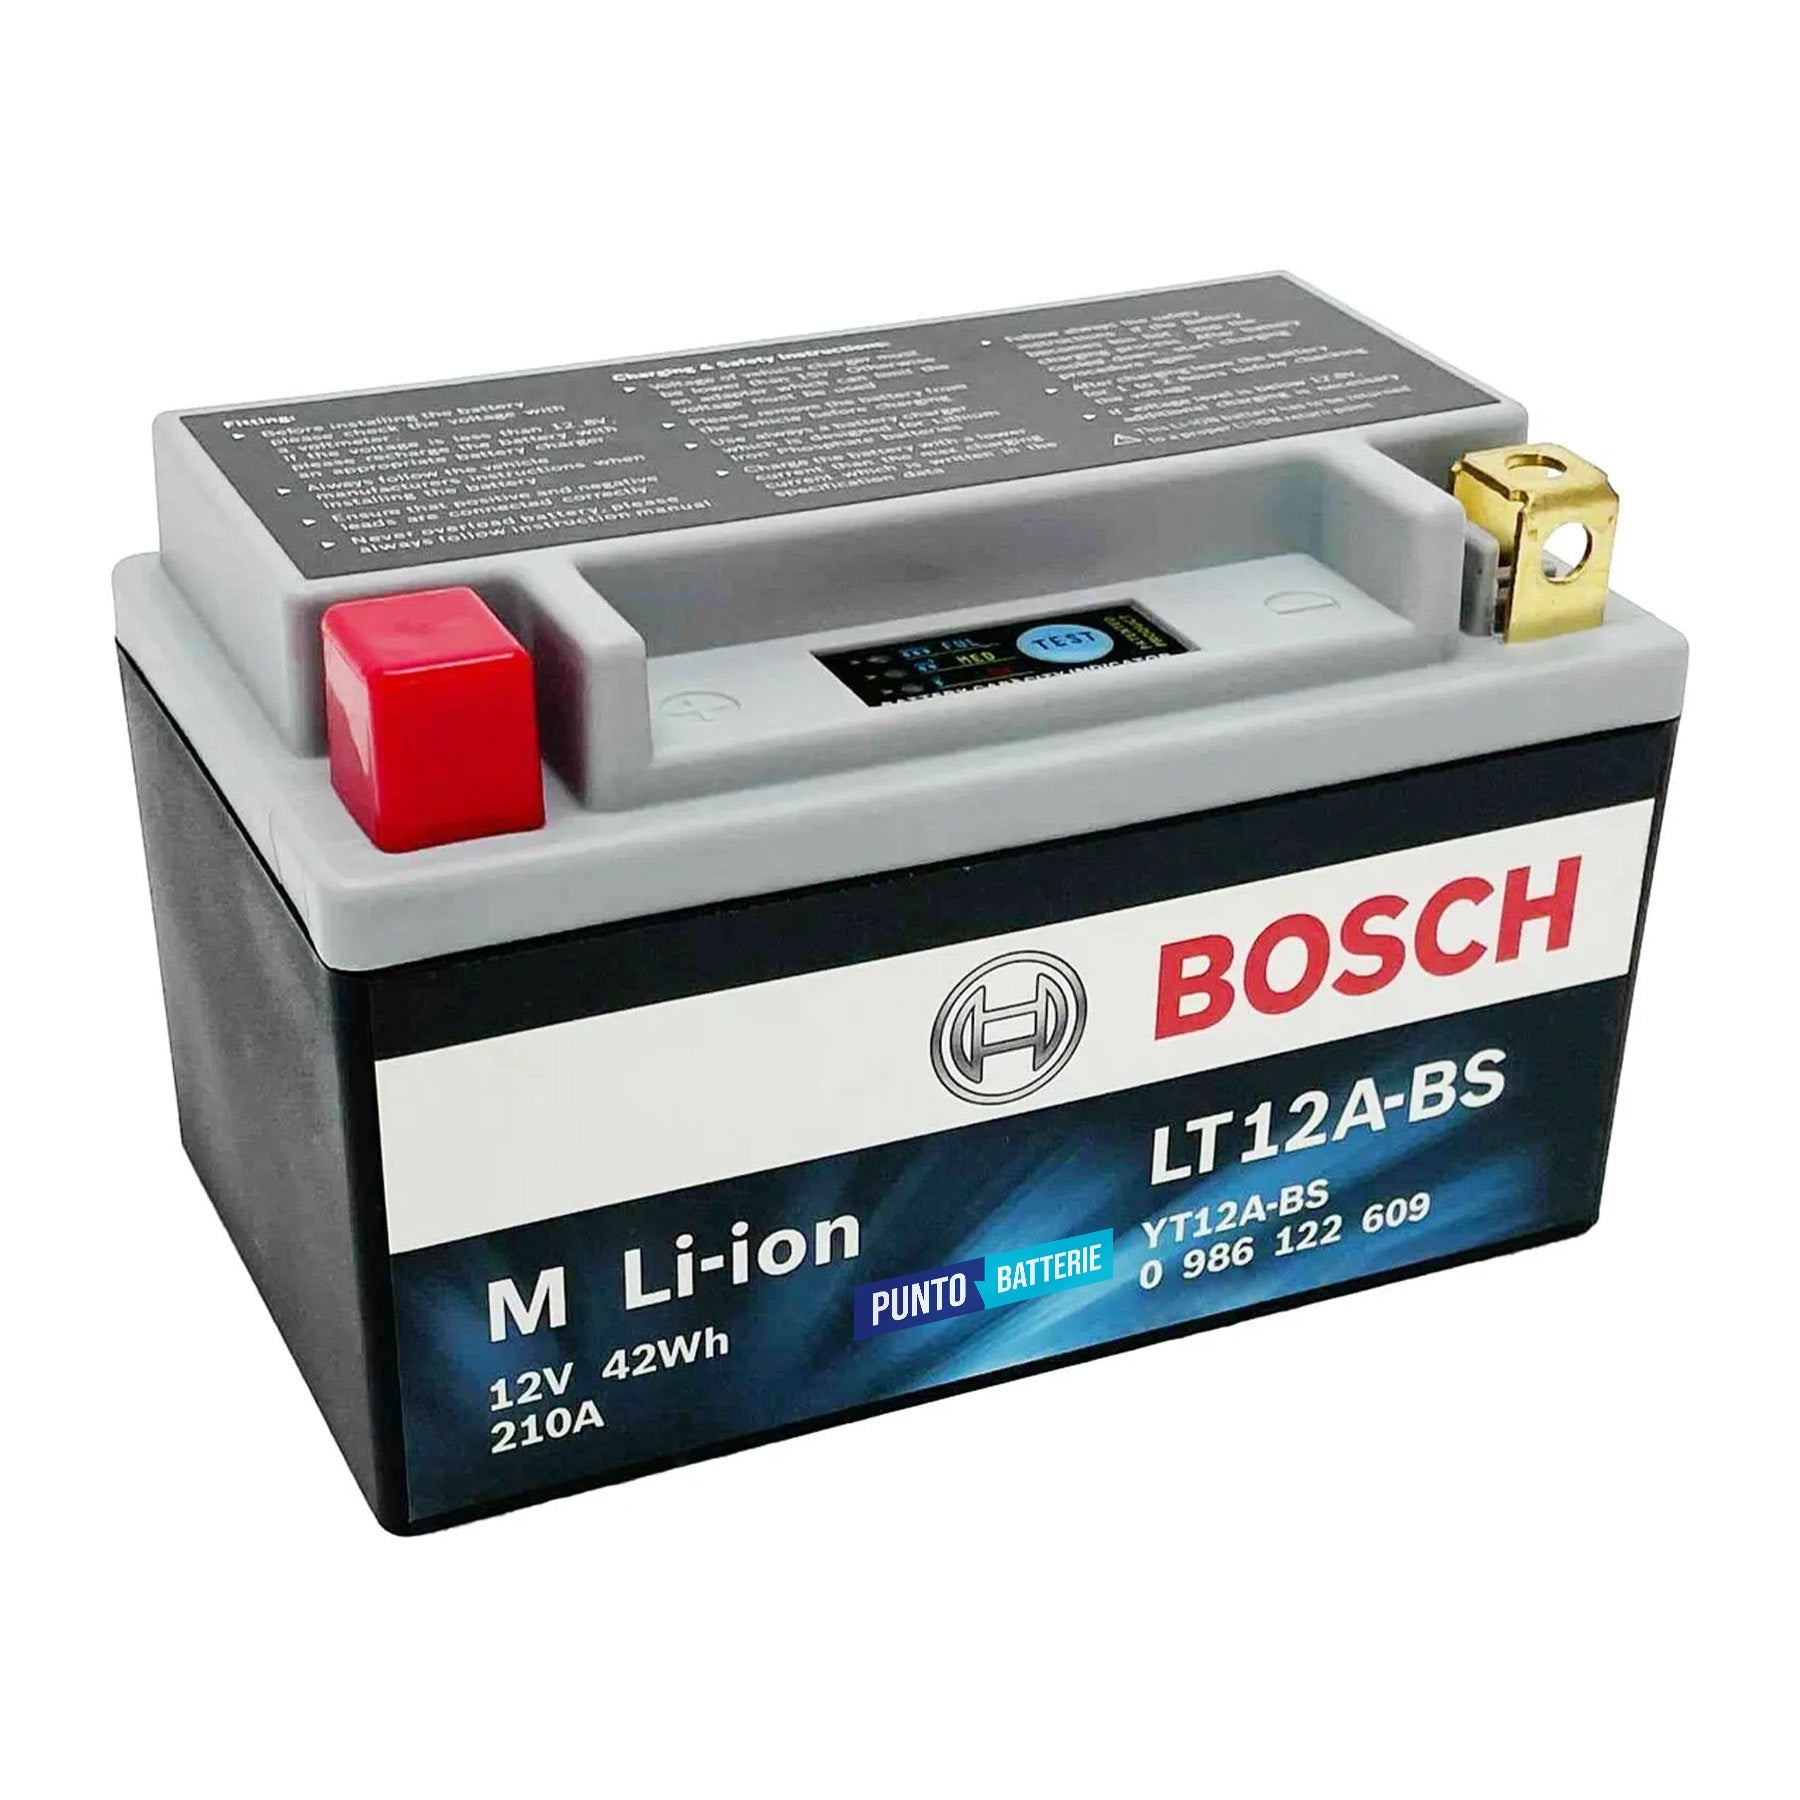 Batteria originale Bosch M Li-ion LT12A-BS, dimensioni 150 x 87 x 107, polo positivo a sinistra, 12 volt, 3 amperora, 210 ampere. Batteria per moto, scooter e powersport.